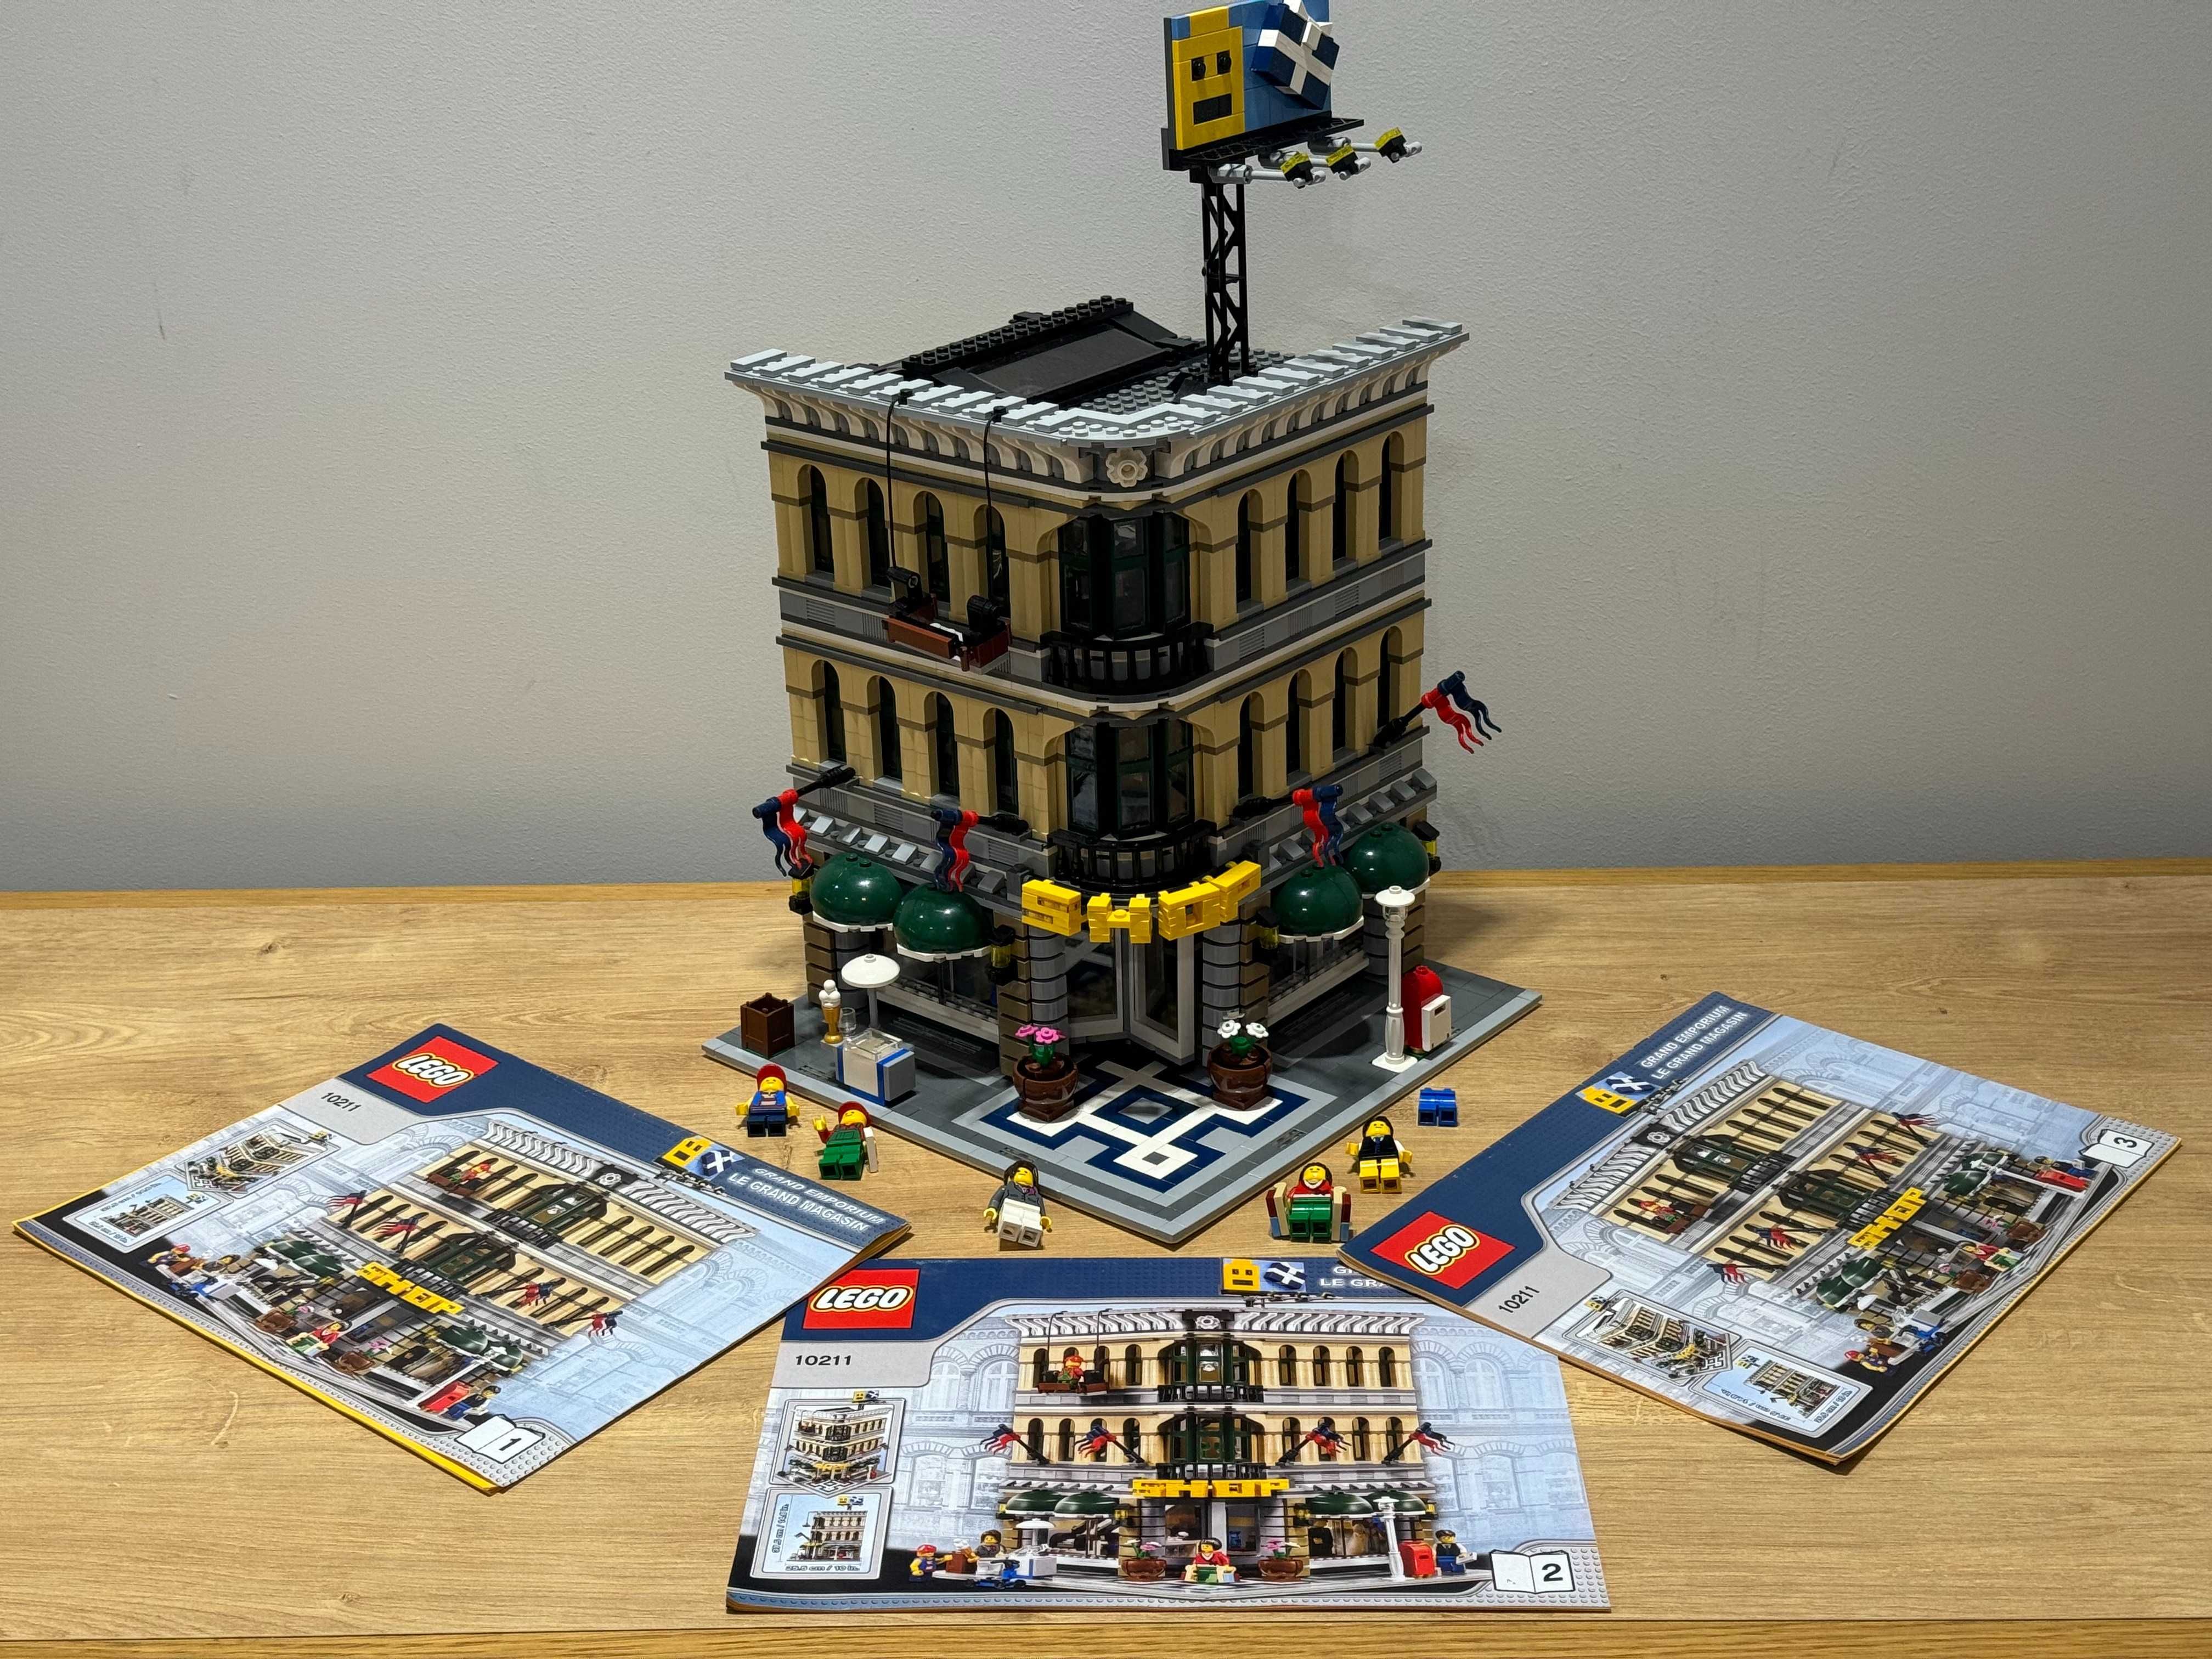 LEGO Creator Expert 10211 Grand Emporium